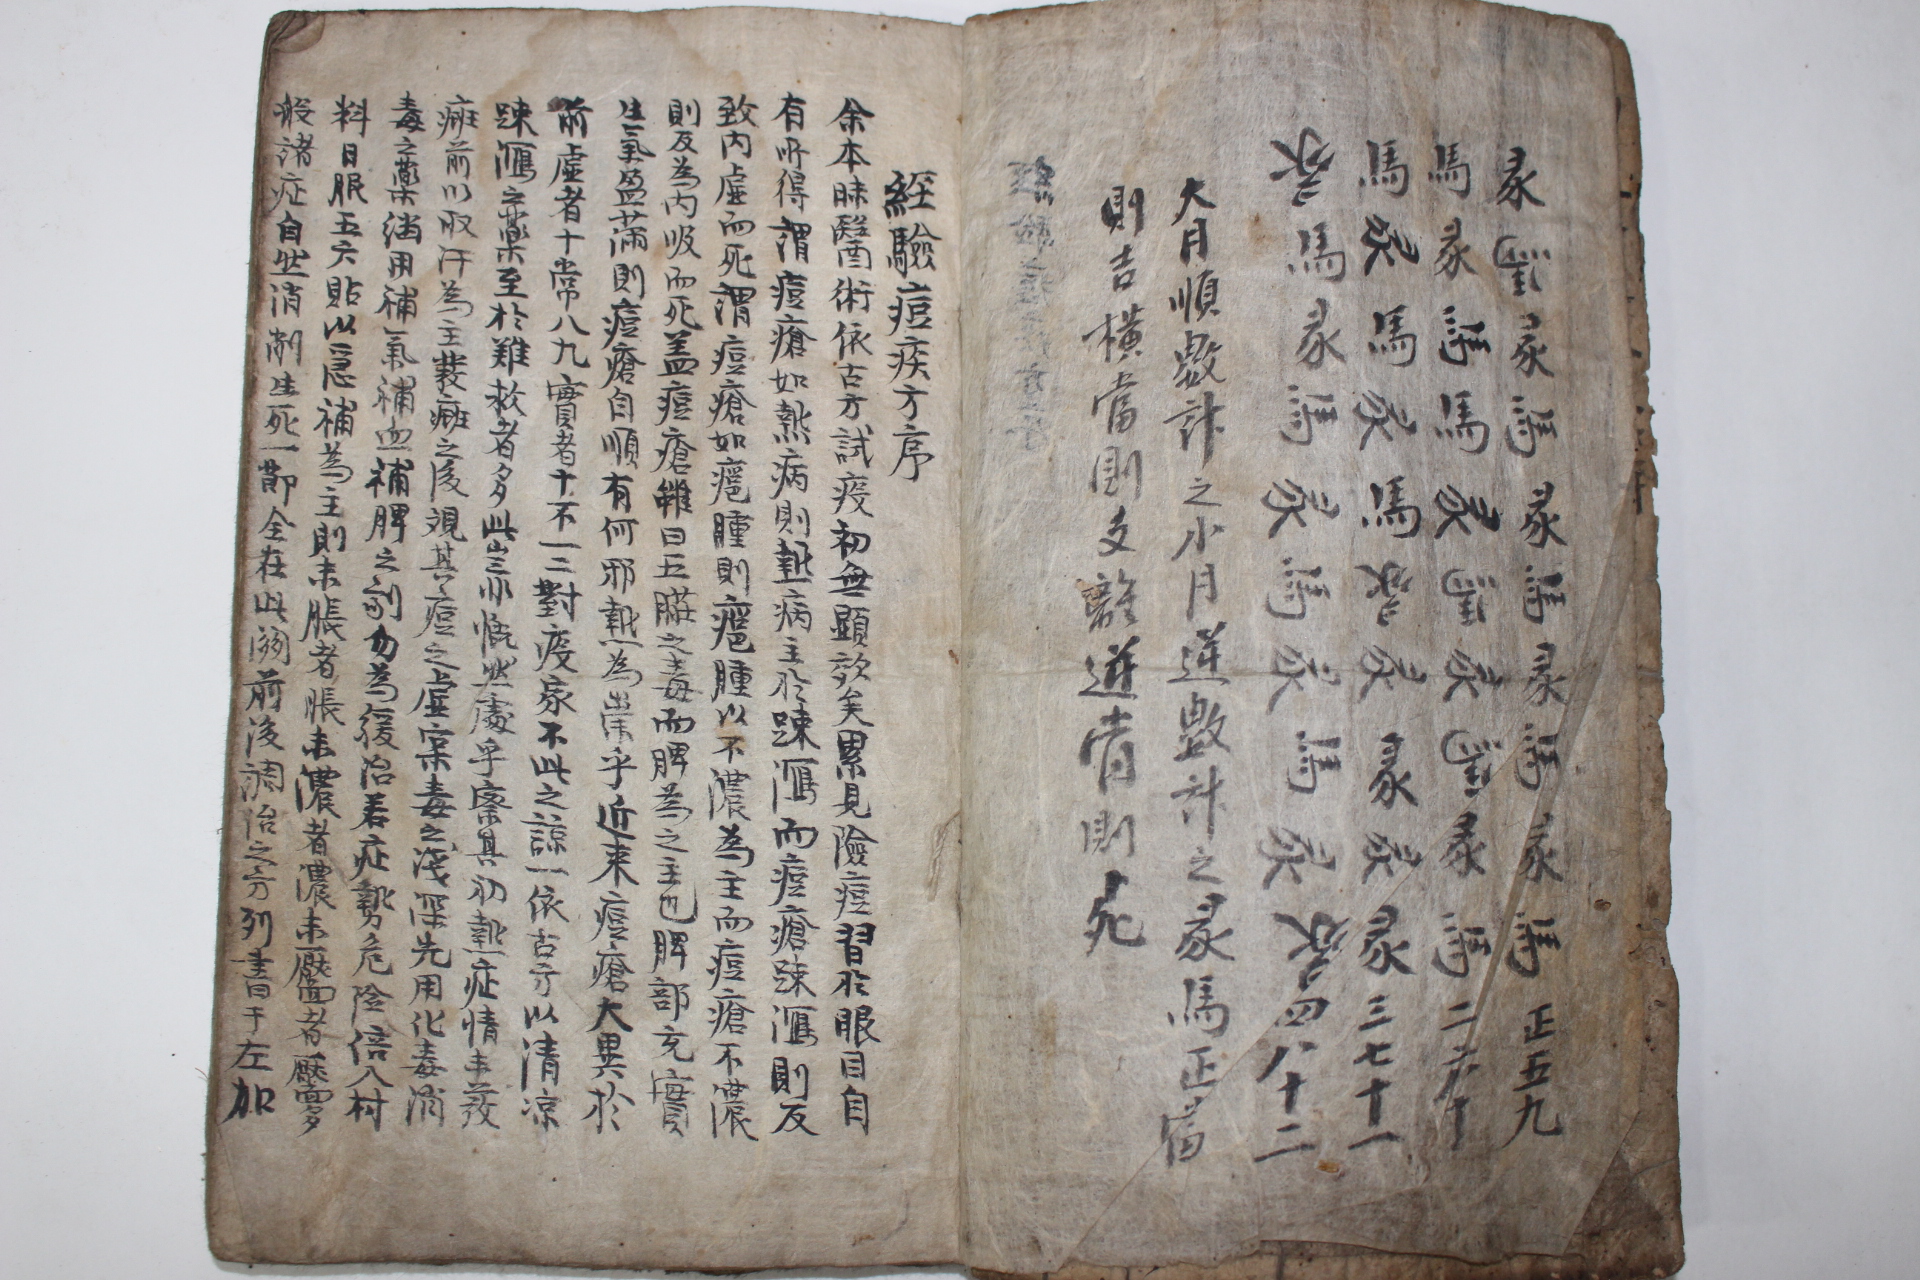 조선시대 고필사본 의서 경험두질방(經驗痘疾方)